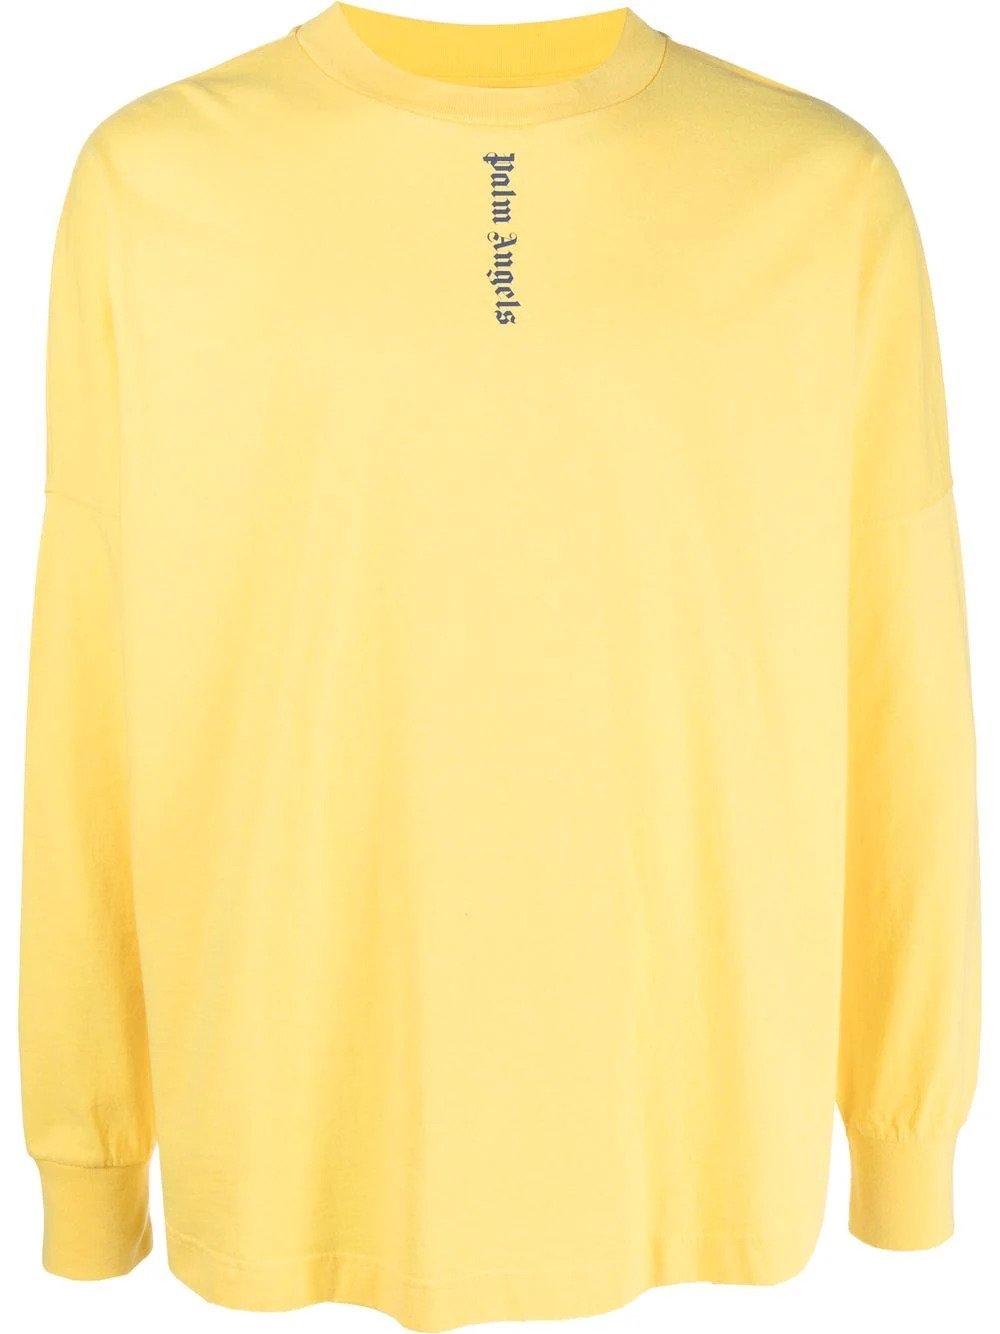 Sweatshirt mit Logodruck in Gelb